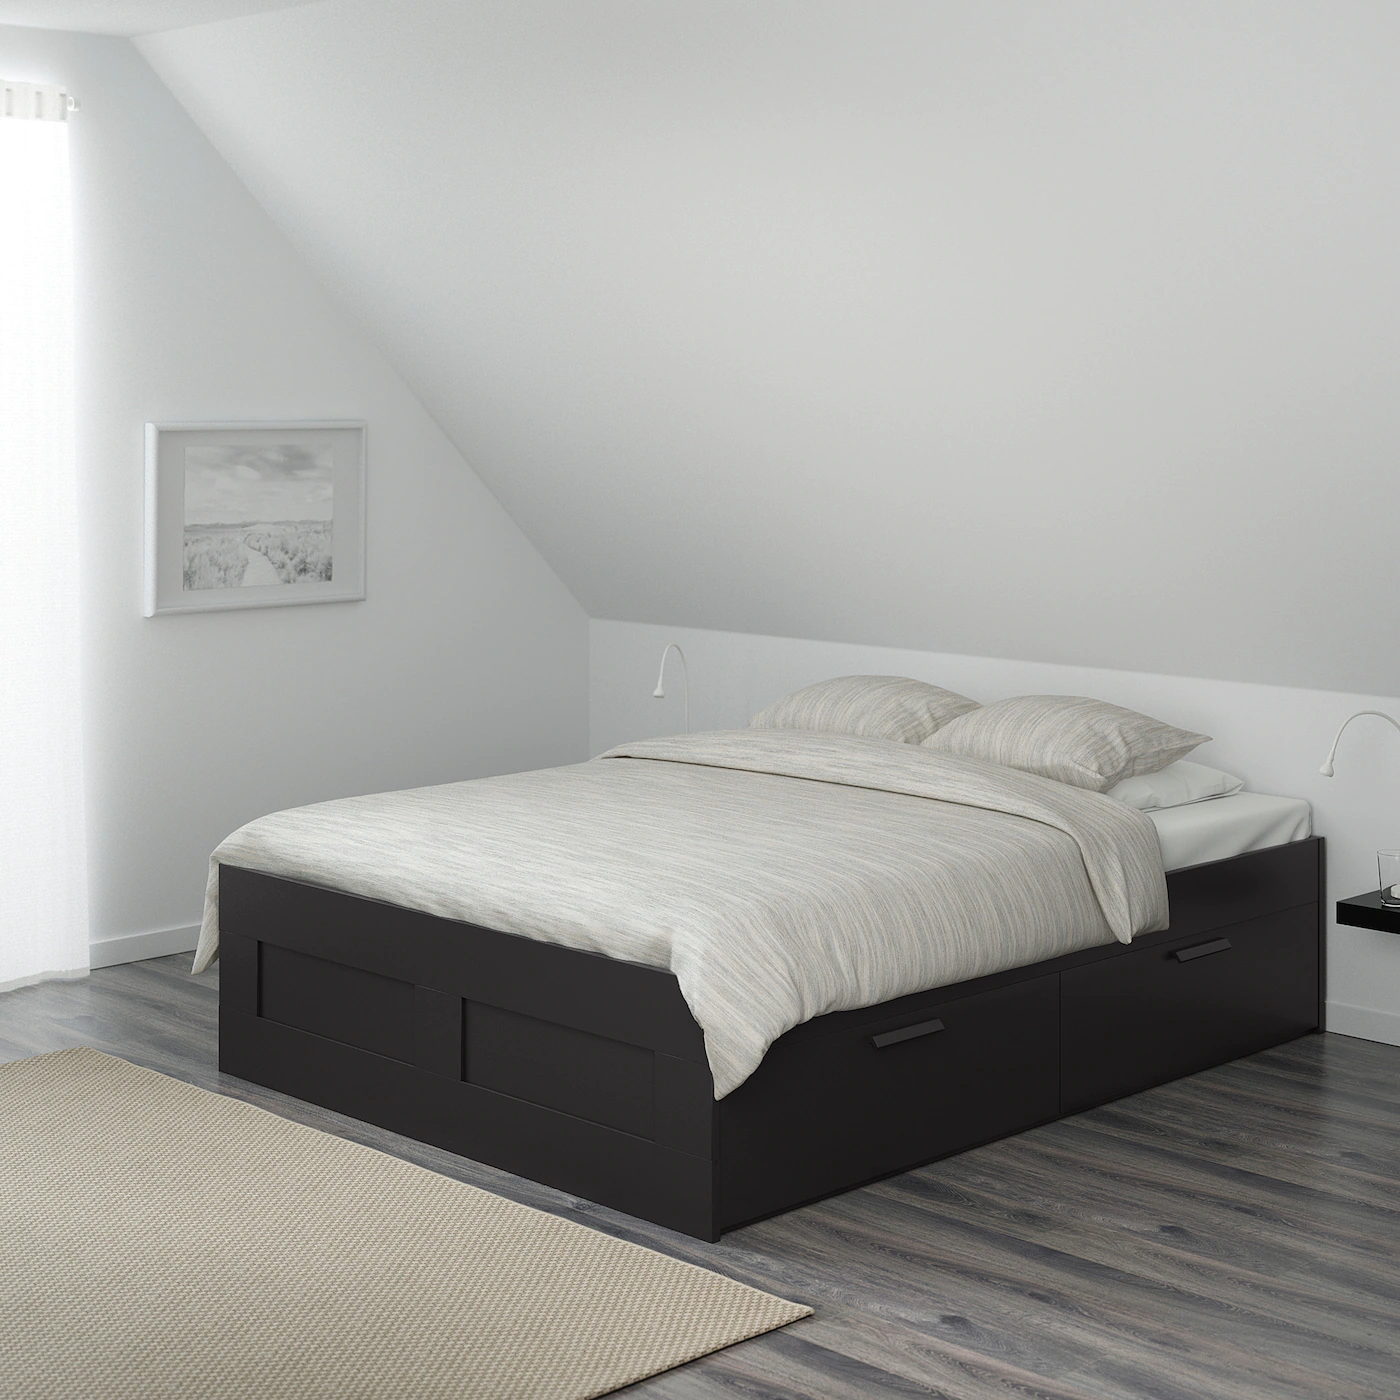 Ikea Brimnes Bed Spacers